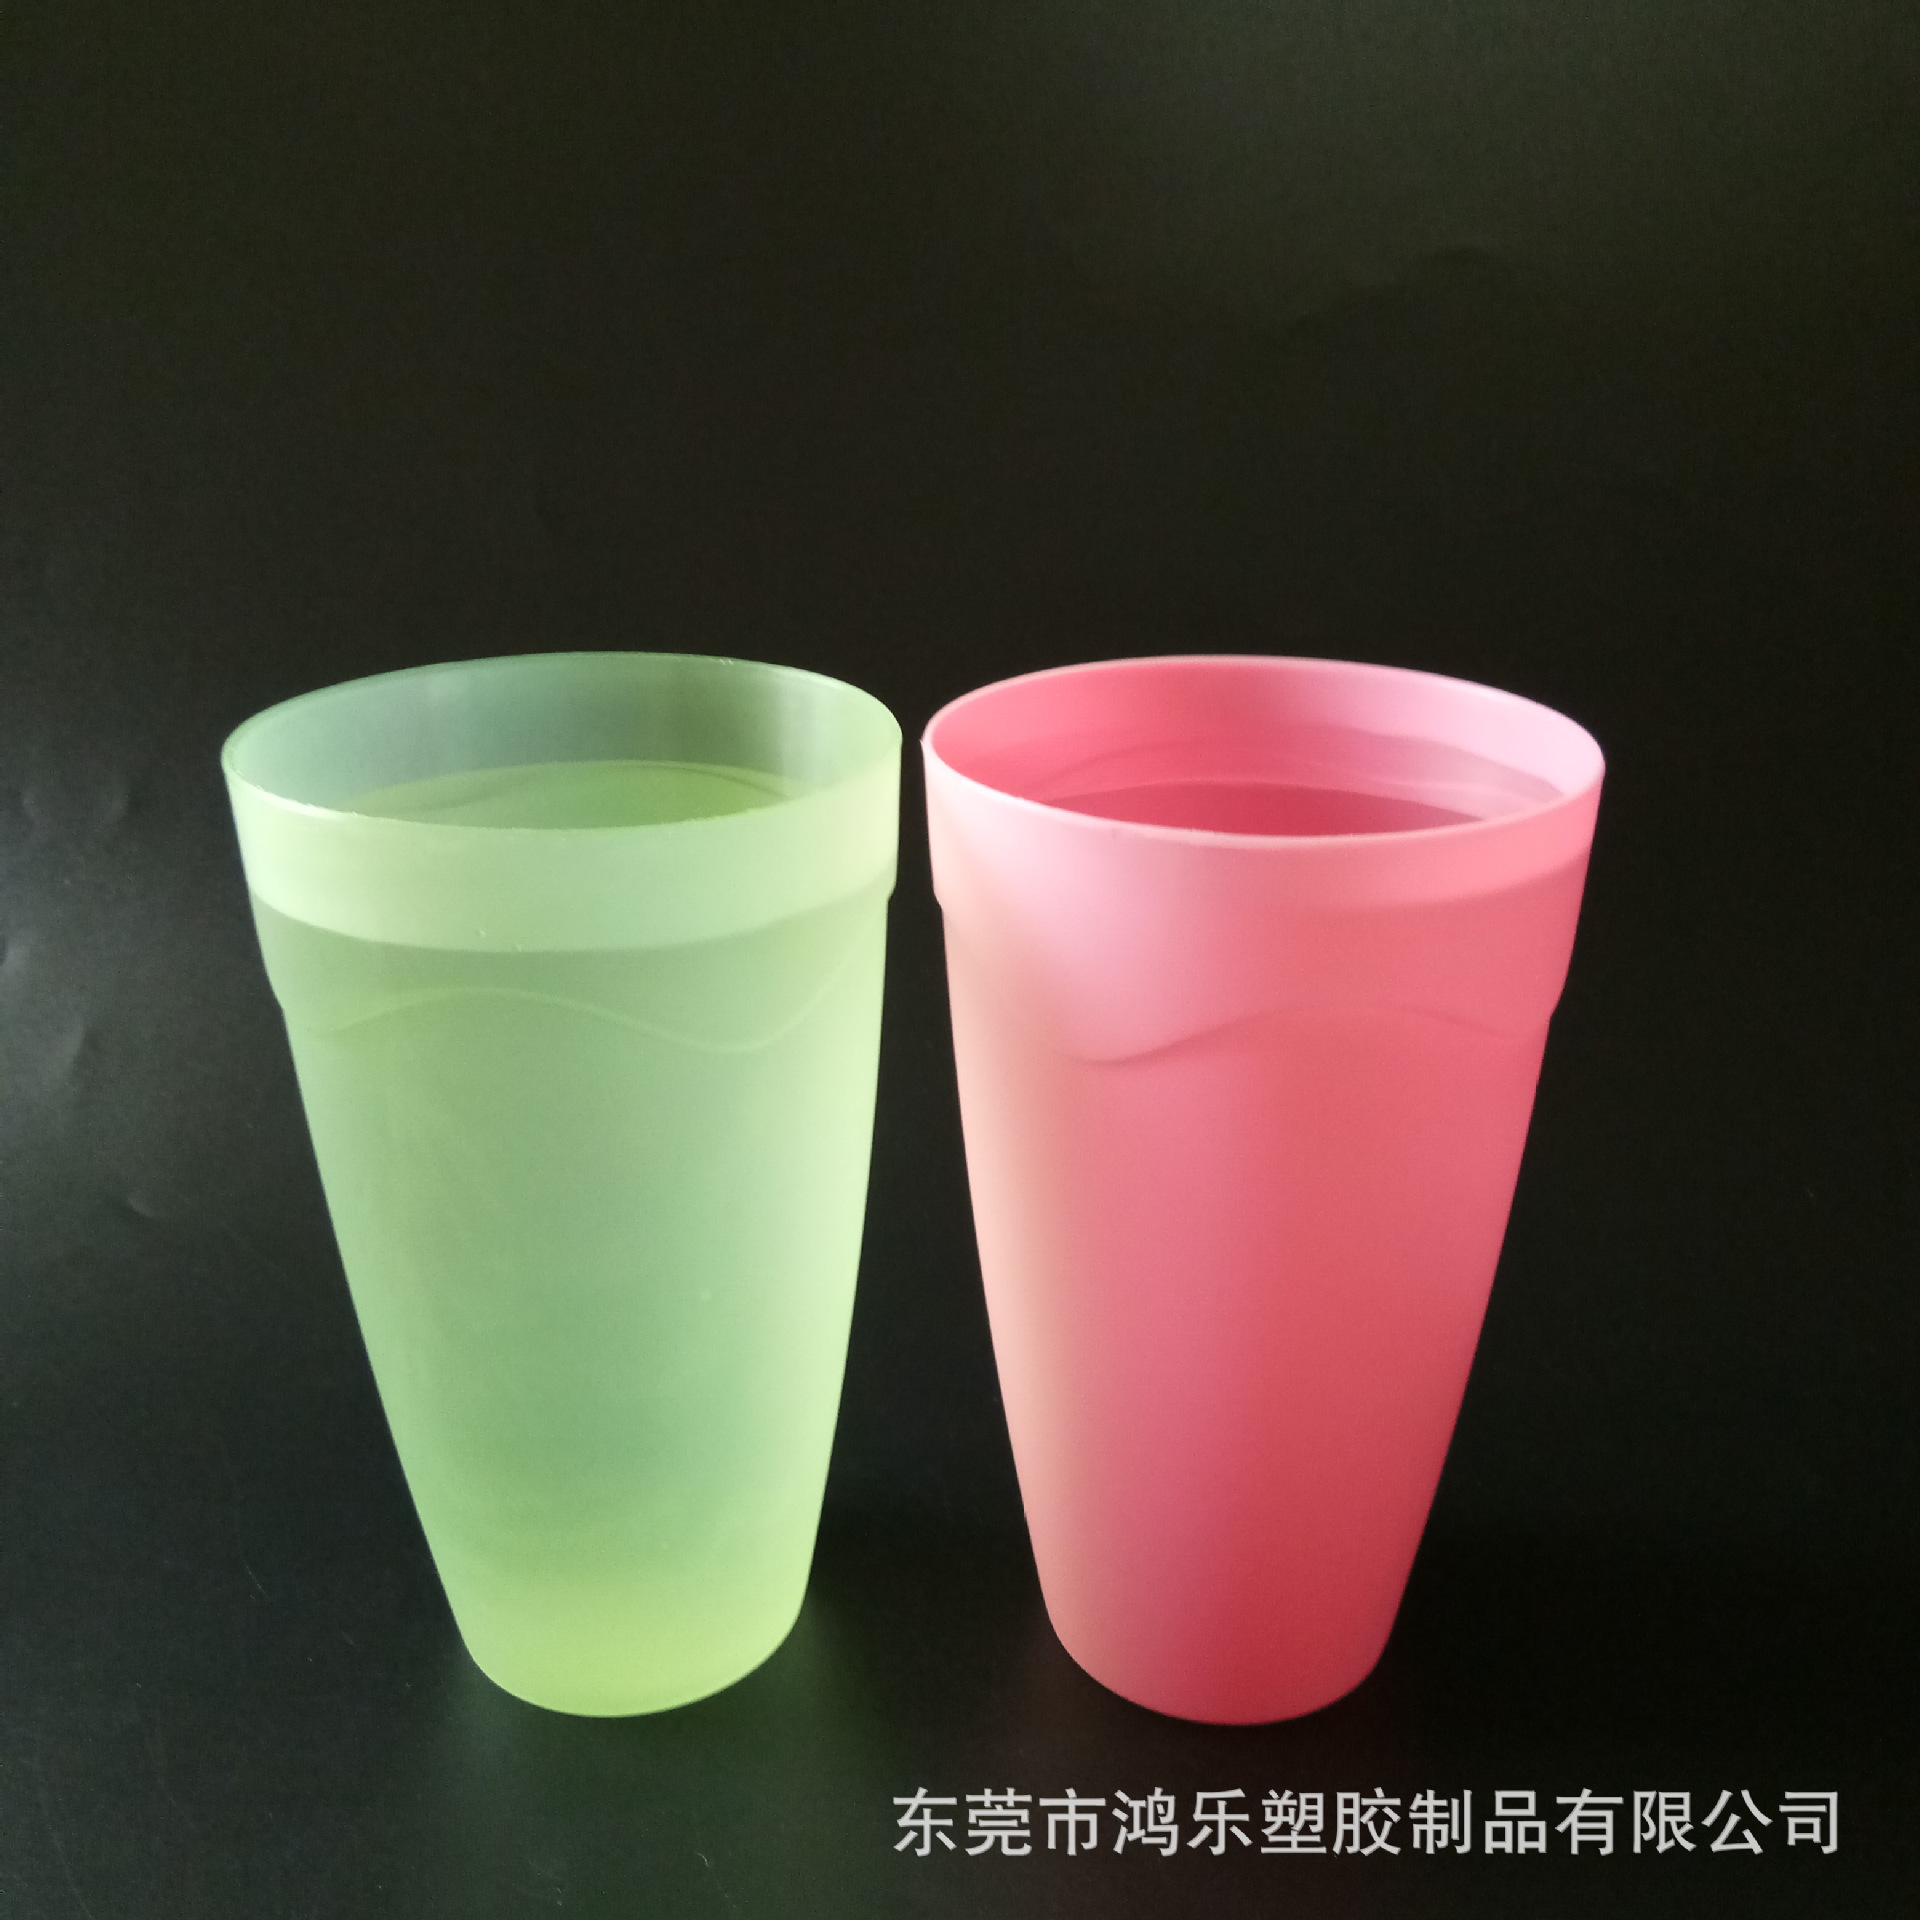 厂家定制PP彩色塑料杯450ml塑料果汁饮料杯细磨砂杯可印刷图案示例图4